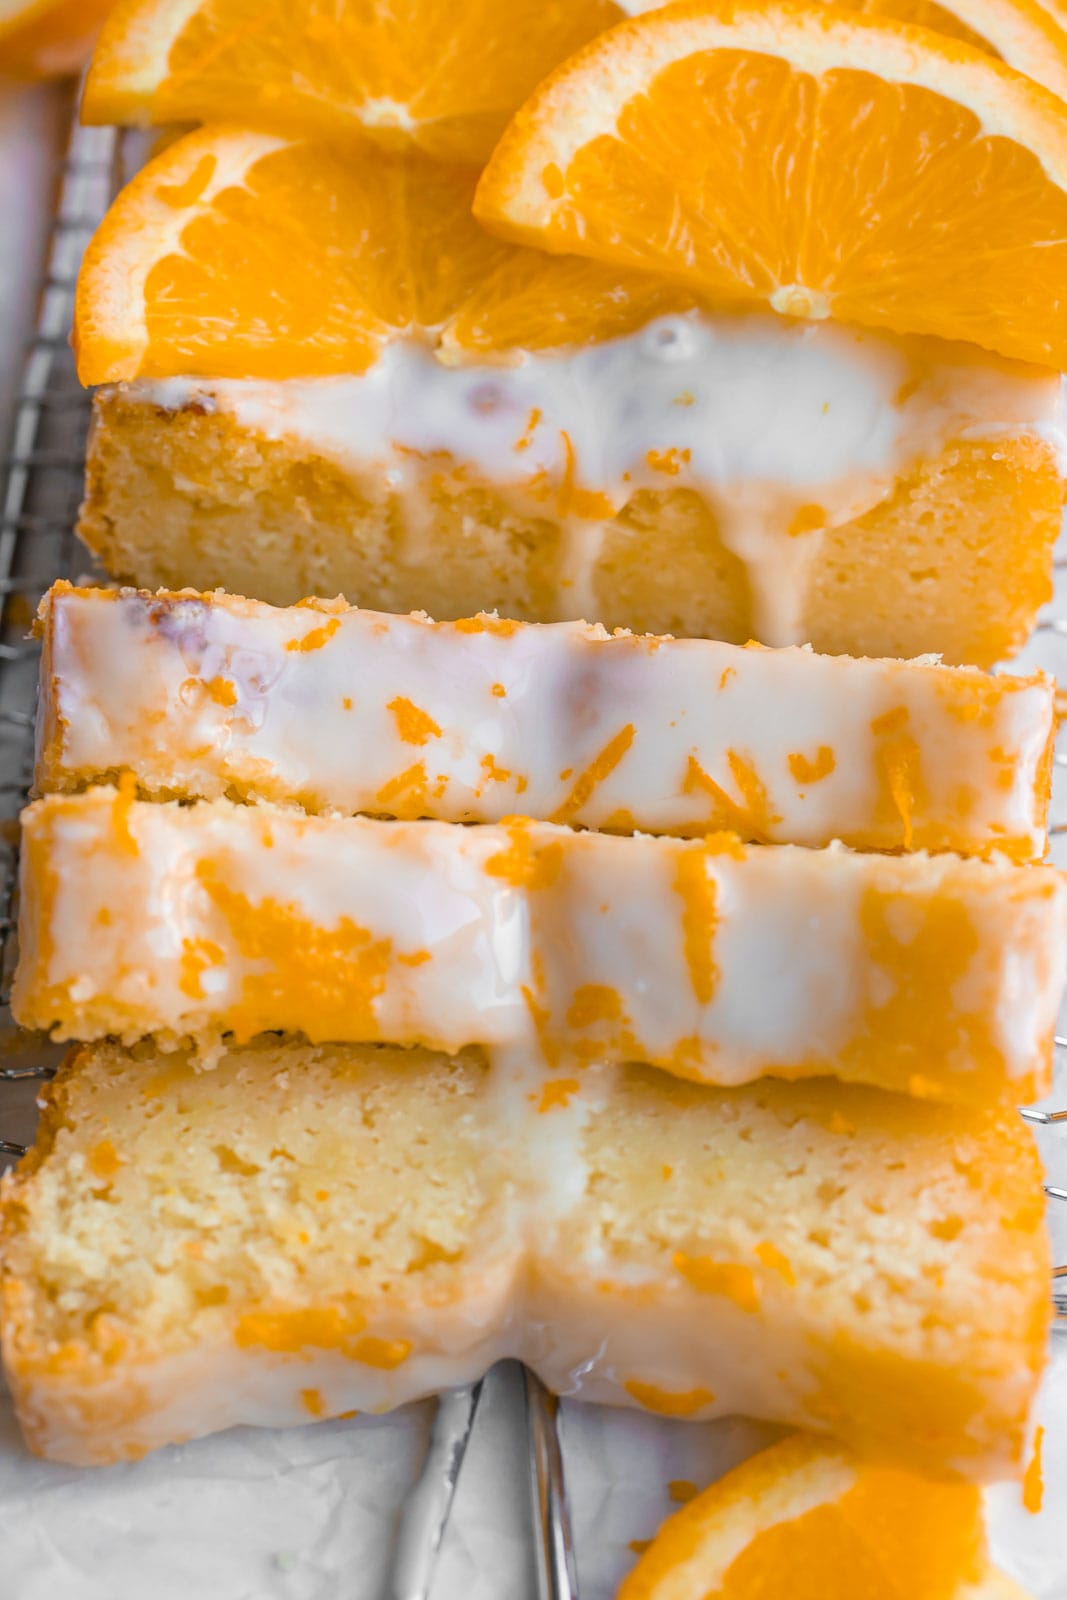 Sliced of orange loaf cake with orange zest on top.